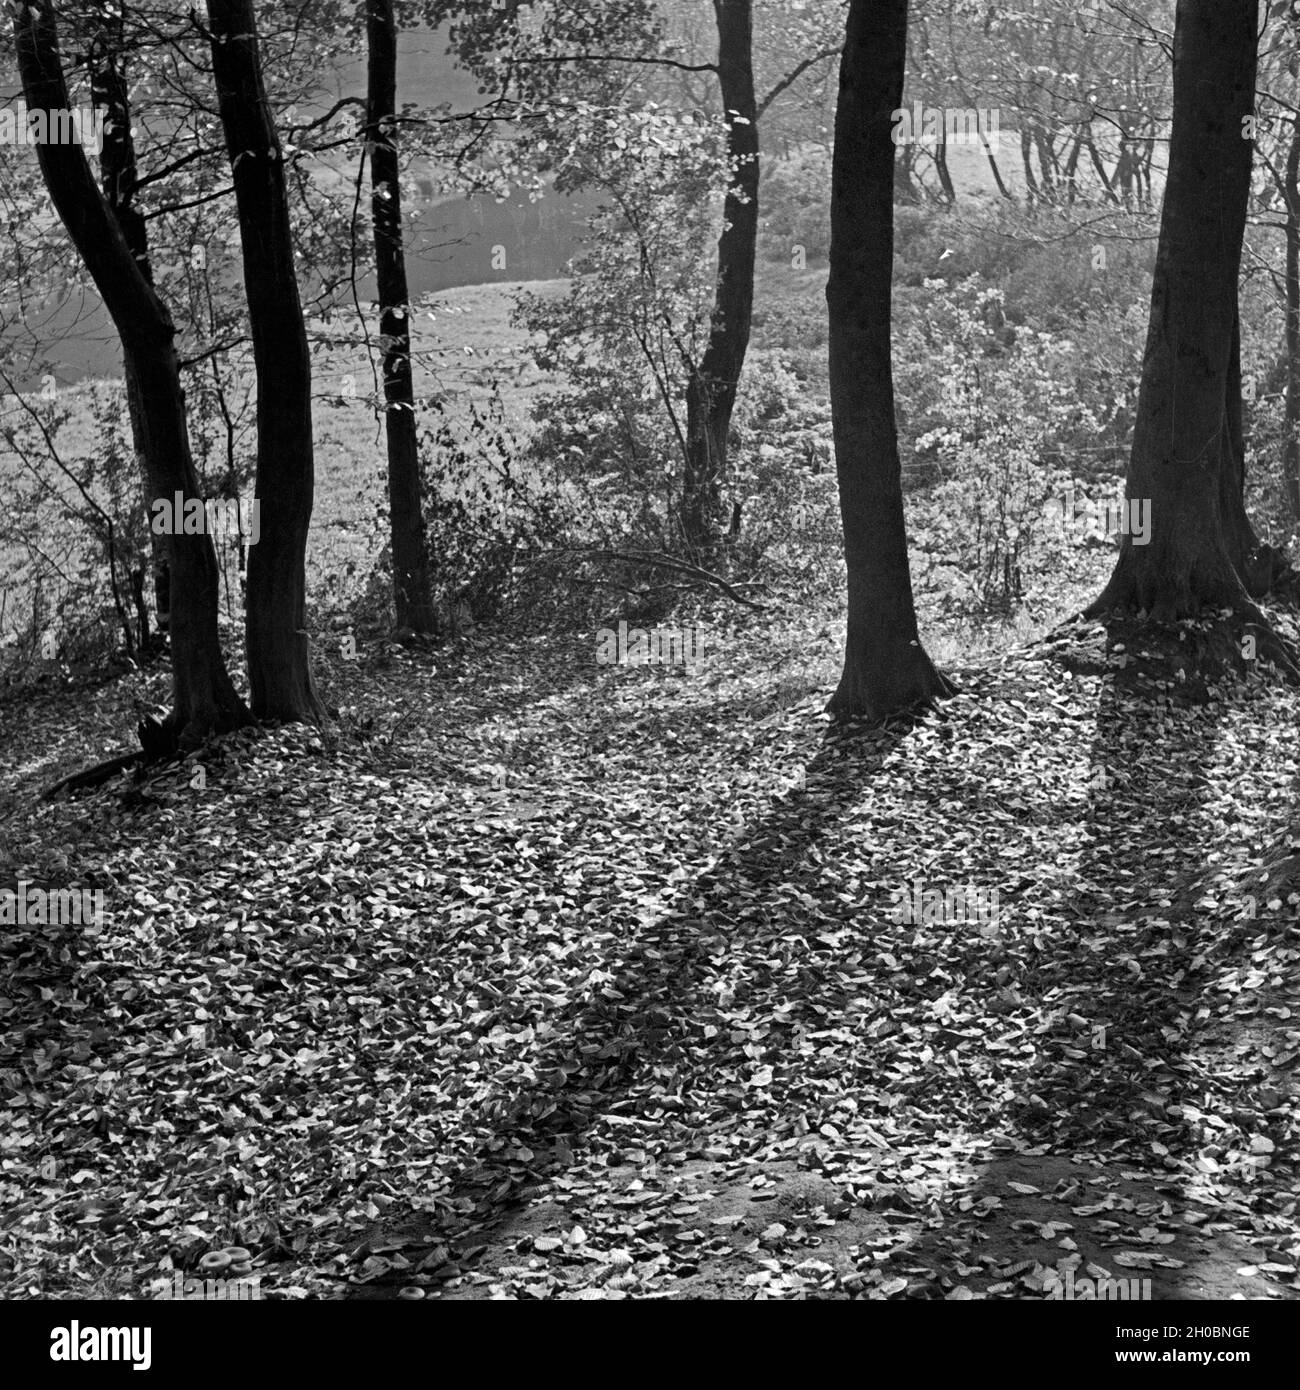 Herbstlaub und Morgensonne bedecken den Boden in einem Park, Deutschland 1930er Jahre. Il fogliame di autunno e il sole del mattino che copre il terreno di un giardino pubblico, Germania 1930s. Foto Stock